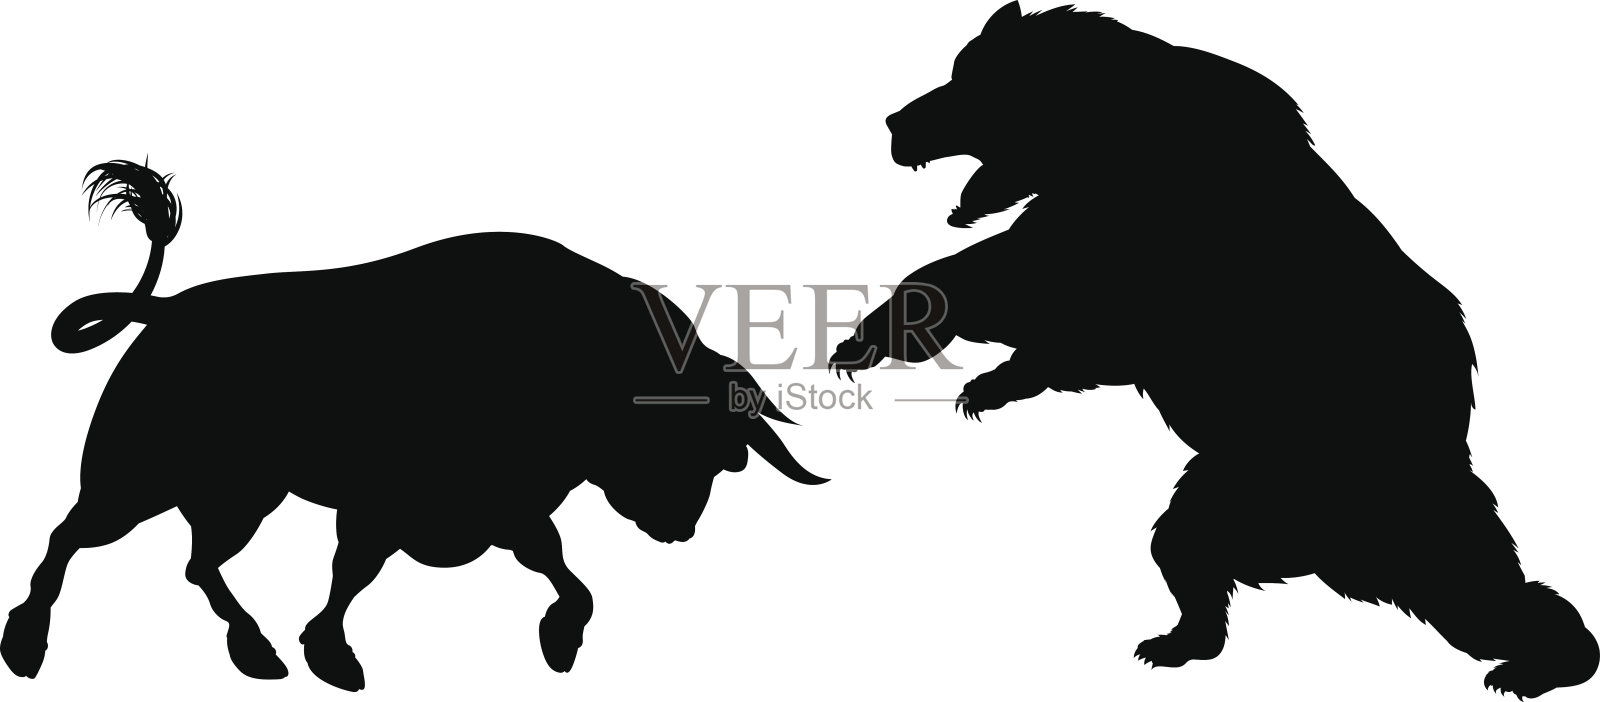 熊与牛的剪影插画图片素材